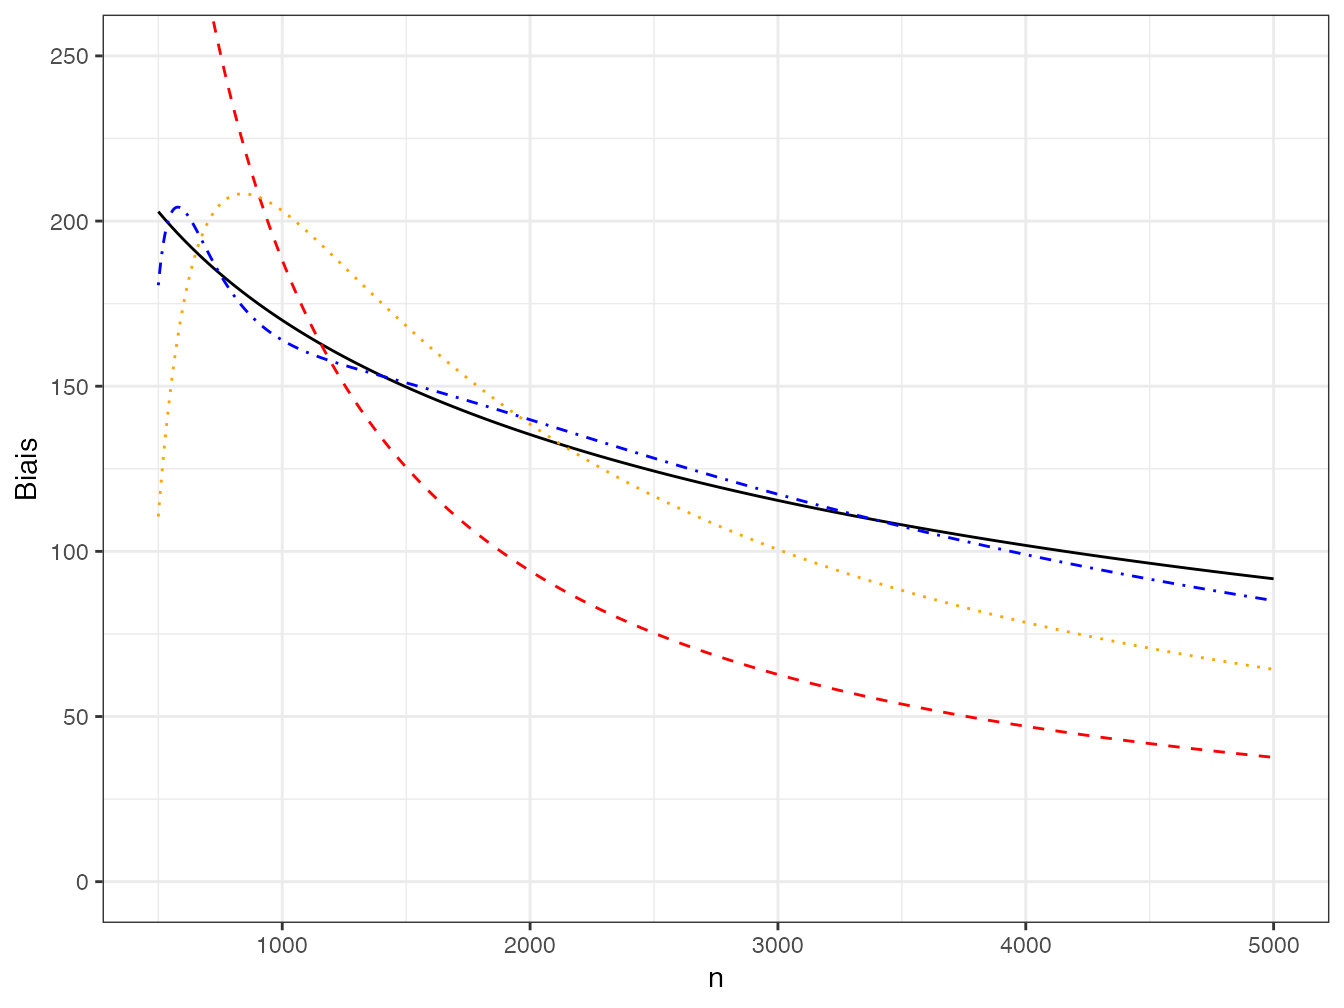 Nombre d’espèces non obervées dans un échantillon de taille croissante et sa décomposition en séries de puissances négatives de \(n\). Le nombre d’espèces non observées est représenté par la courbe continue noire. Les séries de puissances négatives d’ordre 1 (courbe rouge), 2 (courbe orange) et 4 (courbe bleue) sont représentées en pointillés. Les courbes d’ordre 6 et plus sont confondues avec la courbe noire.